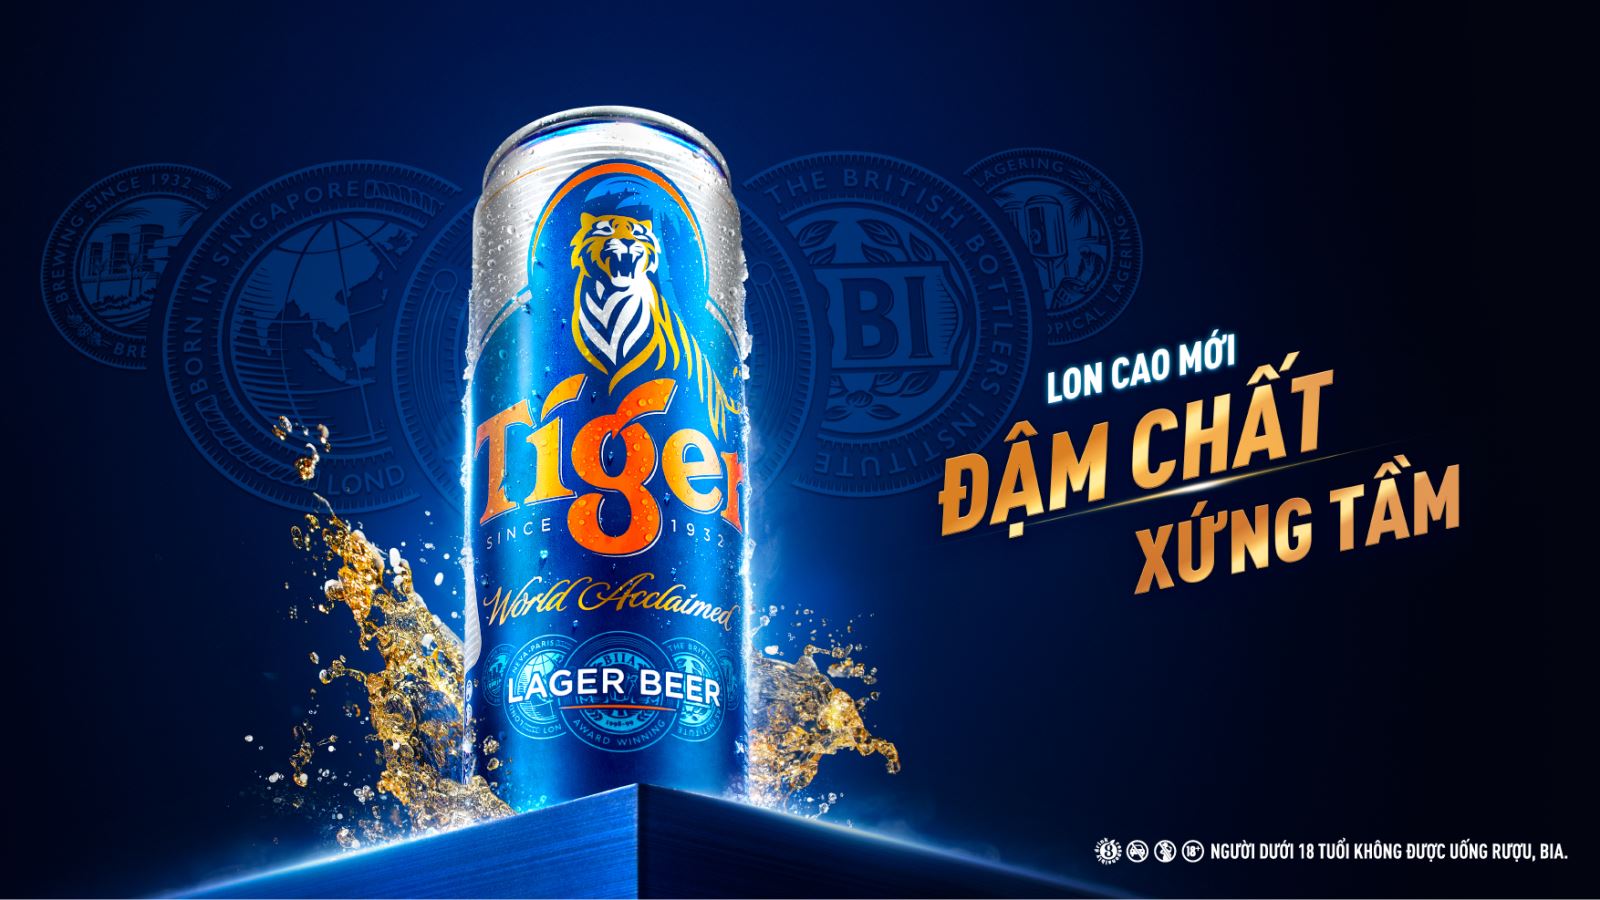 Logo bia Tiger có hình gì Ý nghĩa đằng sau logo bia Tiger nổi tiếng  Bia  Tiger